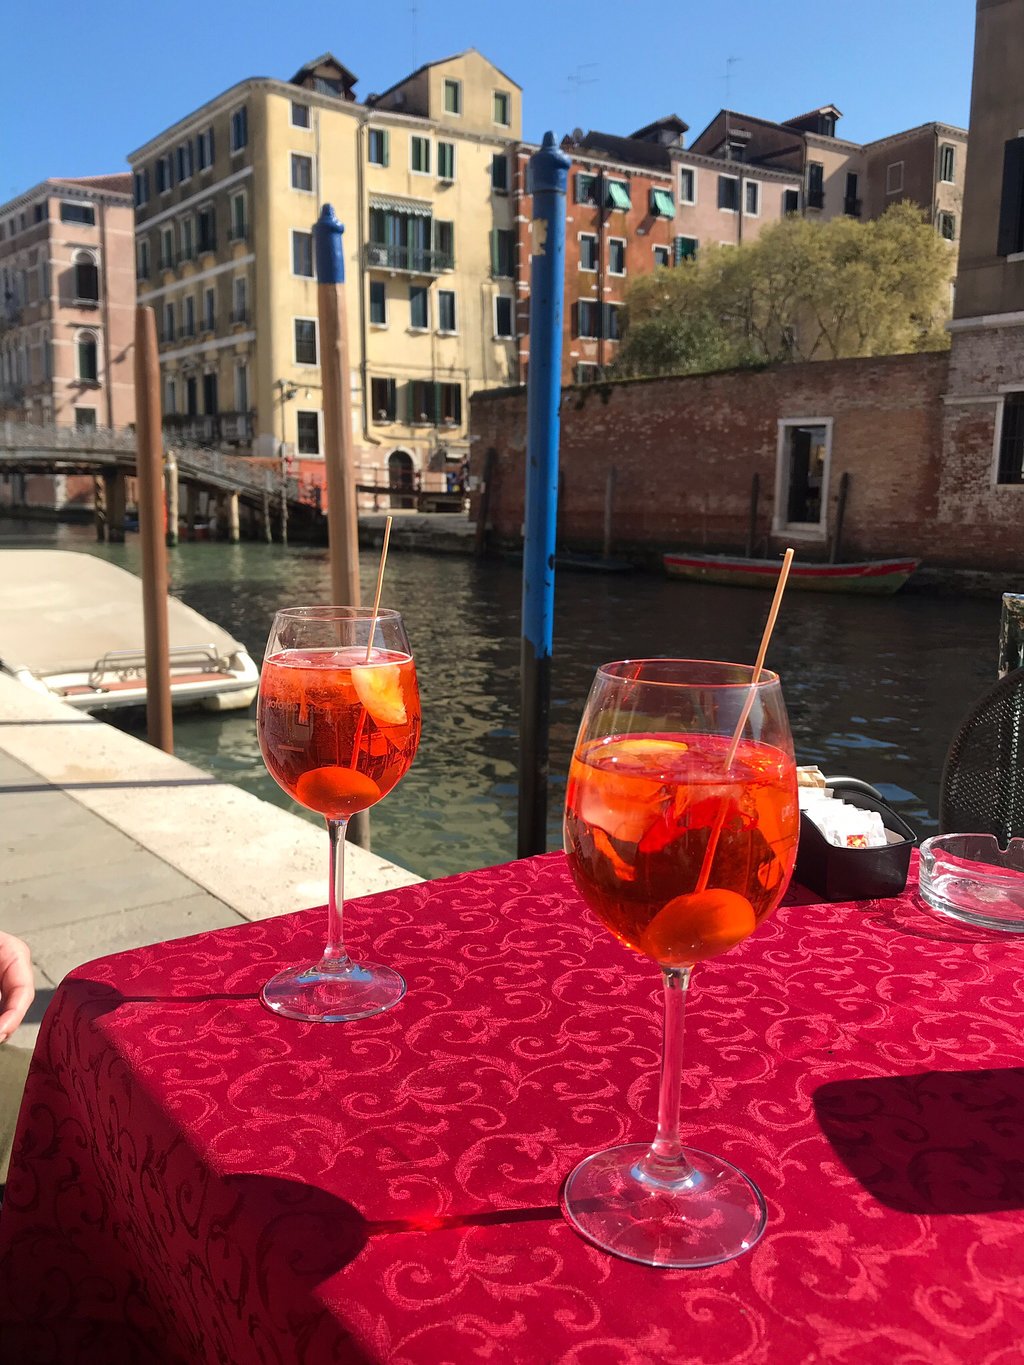 Profondo Rosso, Venezia